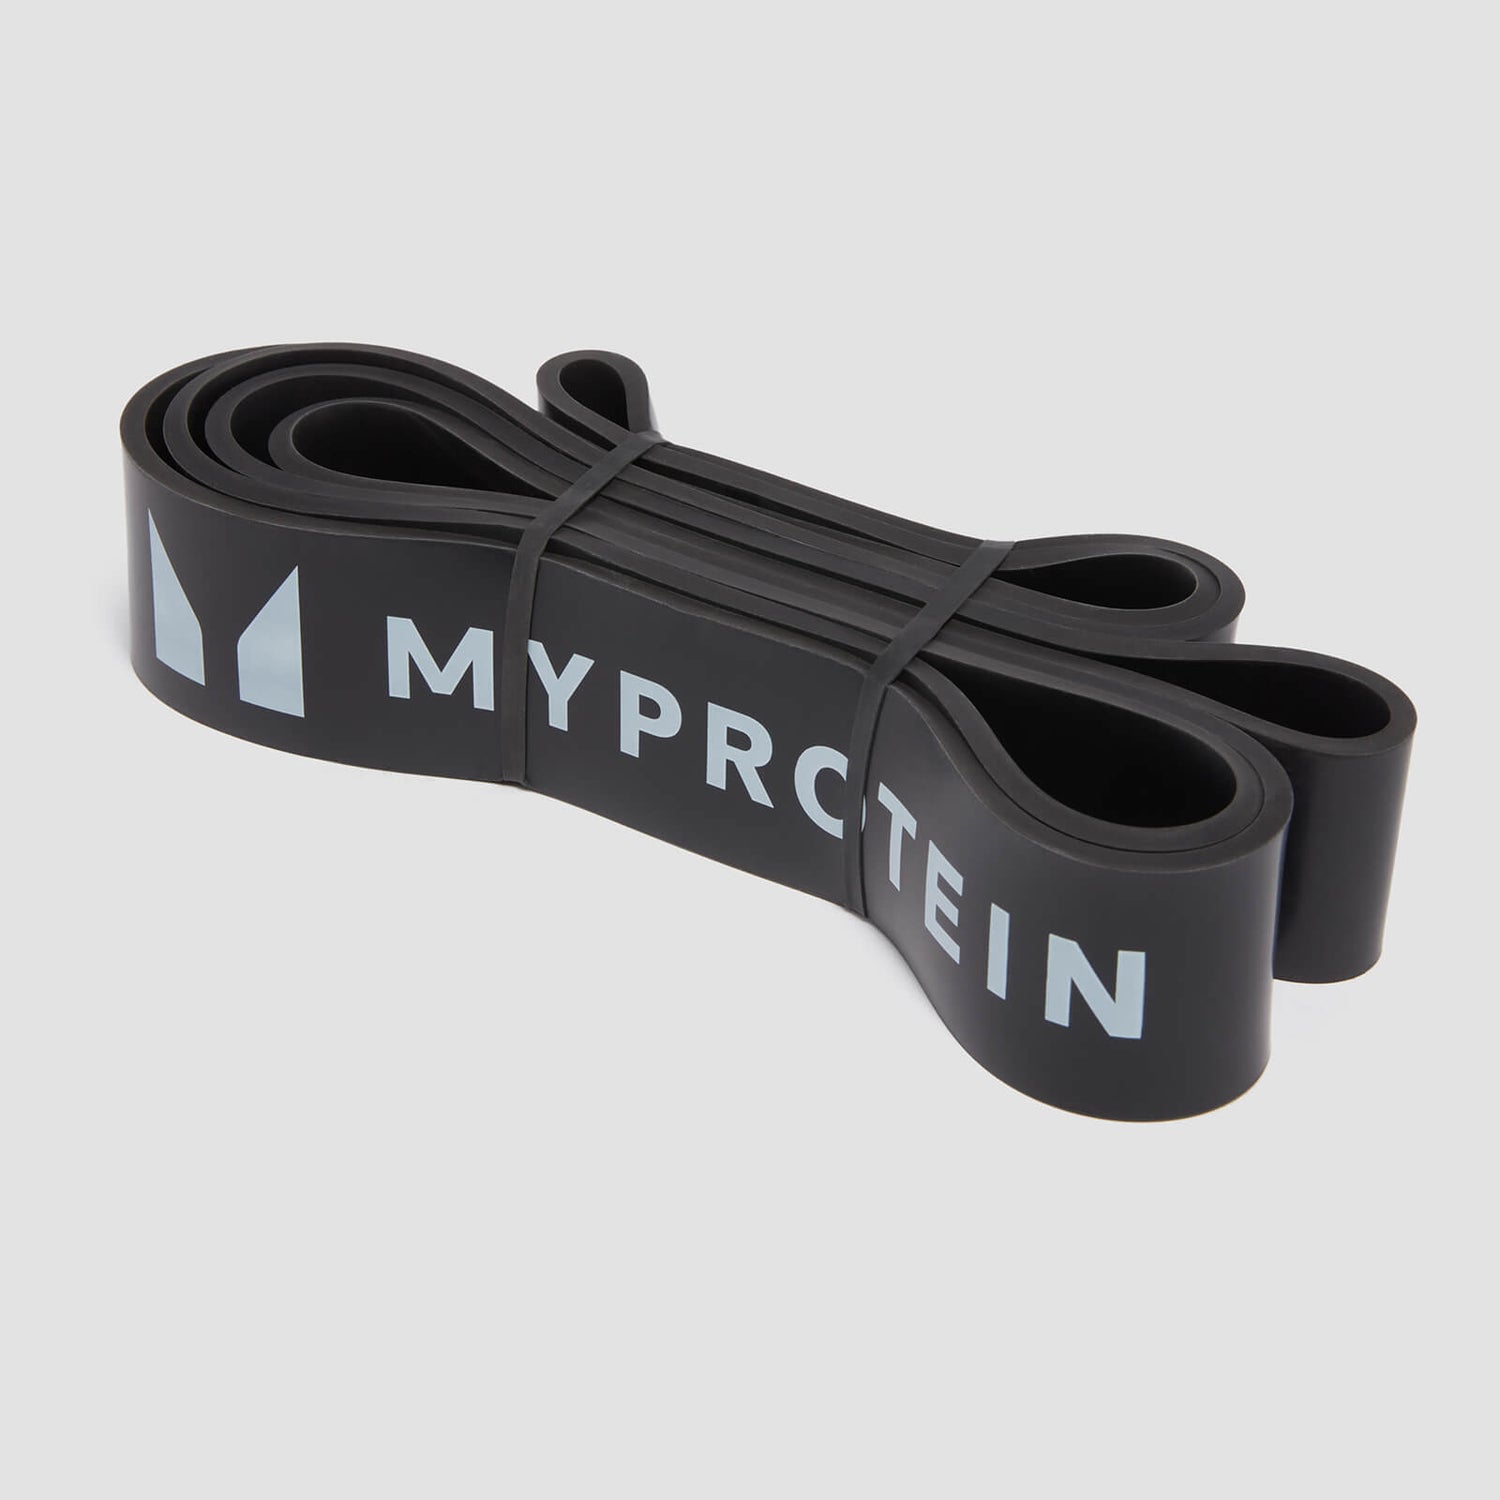 Myprotein Ellenállásos Gumiszalag, egyedi szalag, (23-54 kg) - Fekete